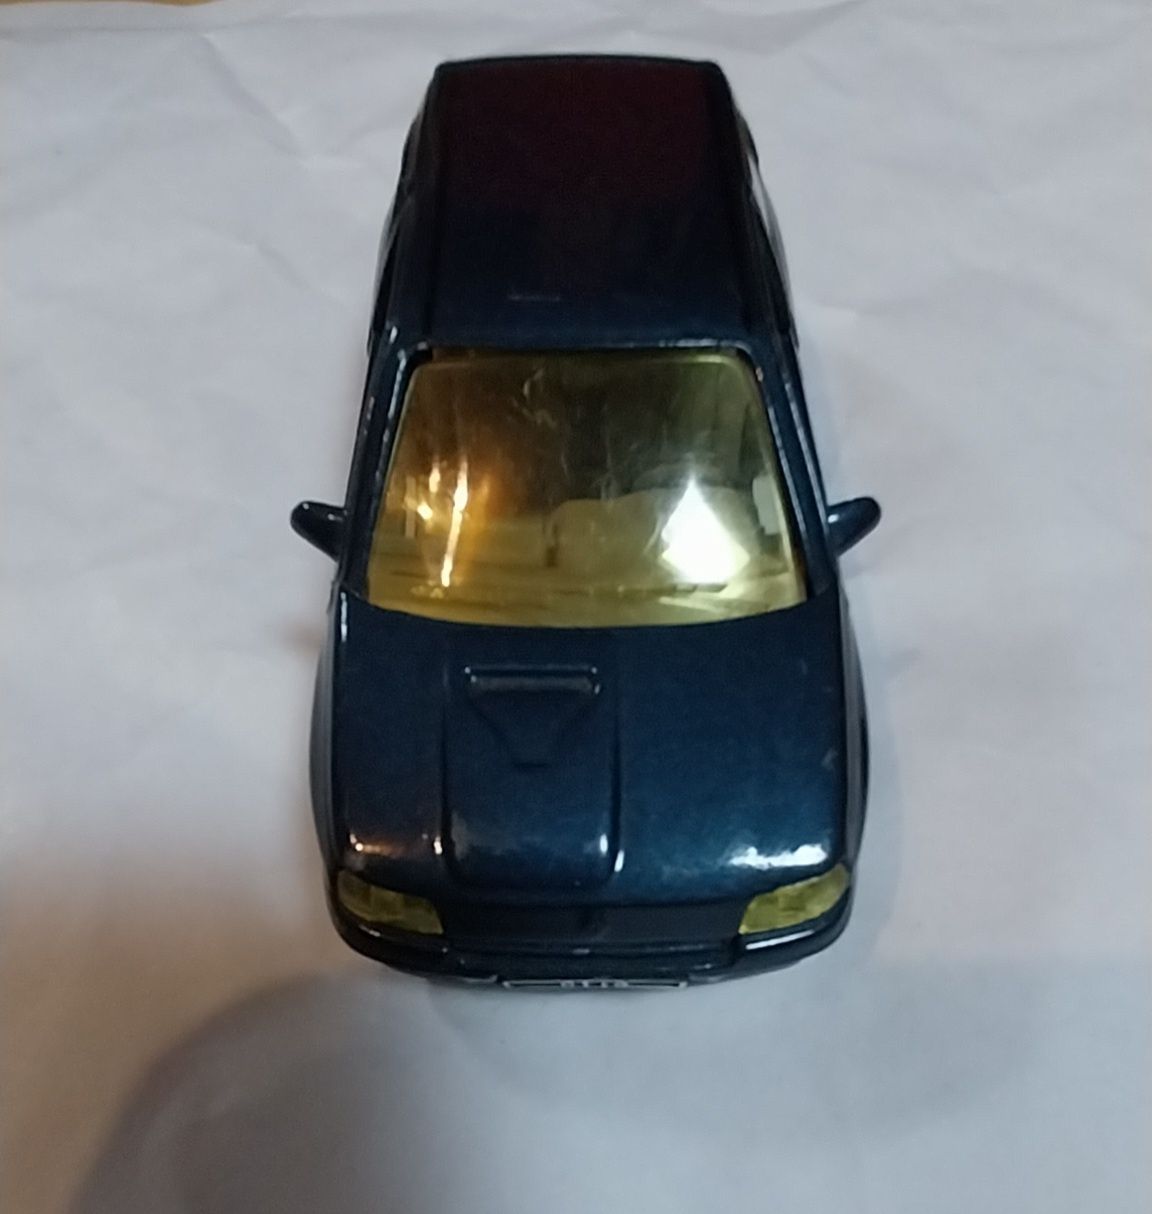 Miniatura da Solido Renault Clio escala 1/43